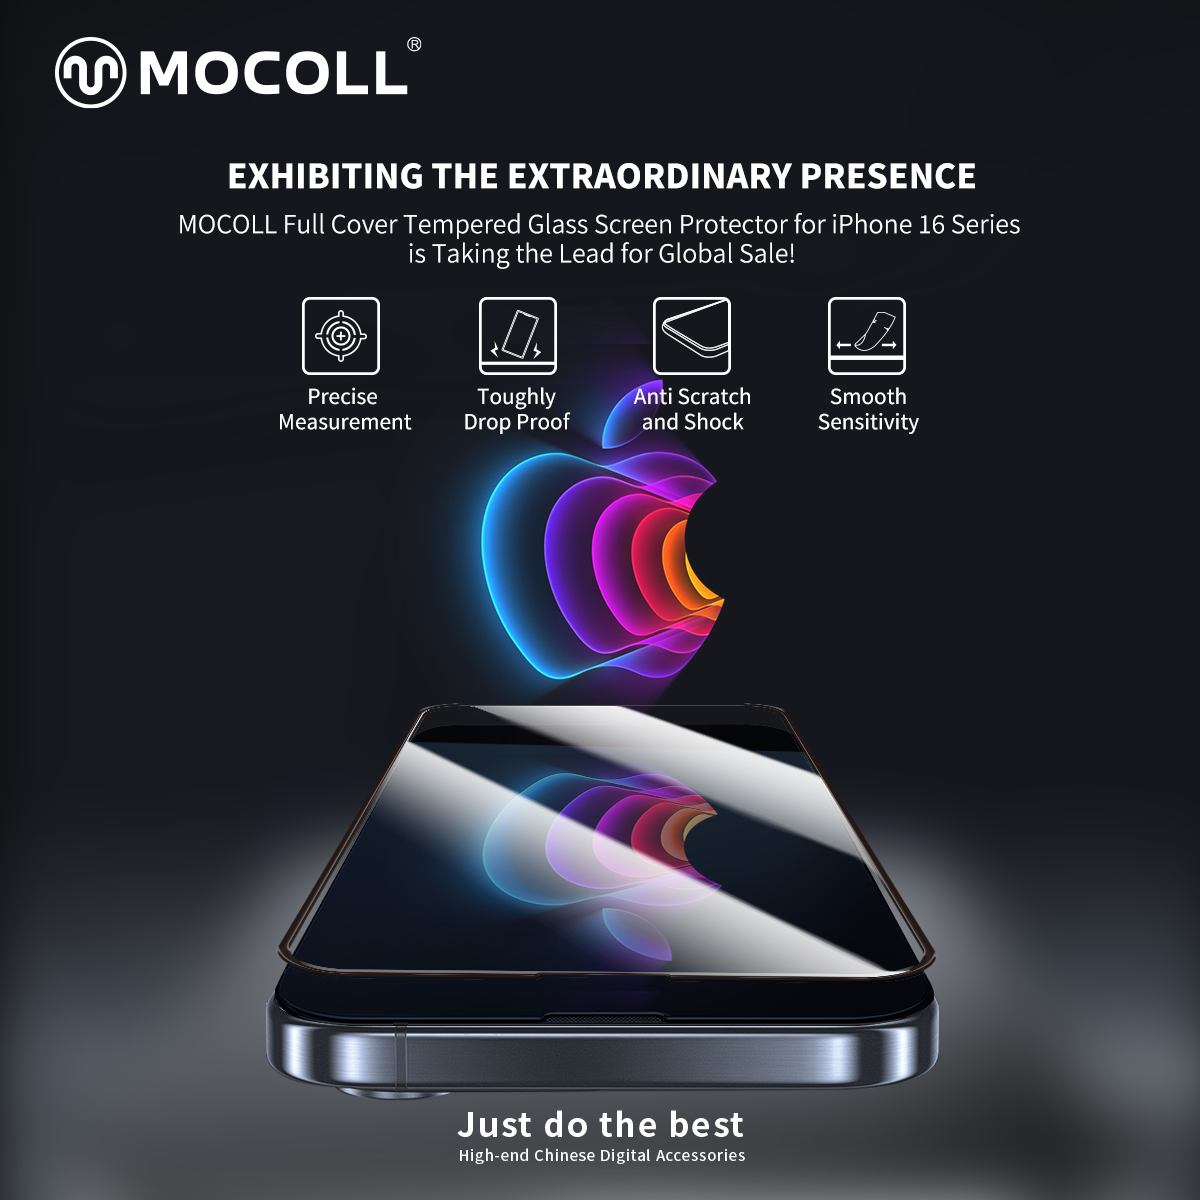 Ecco il! MOCOLL Nuova protezione per lo schermo in prevendita per iPhone 16!